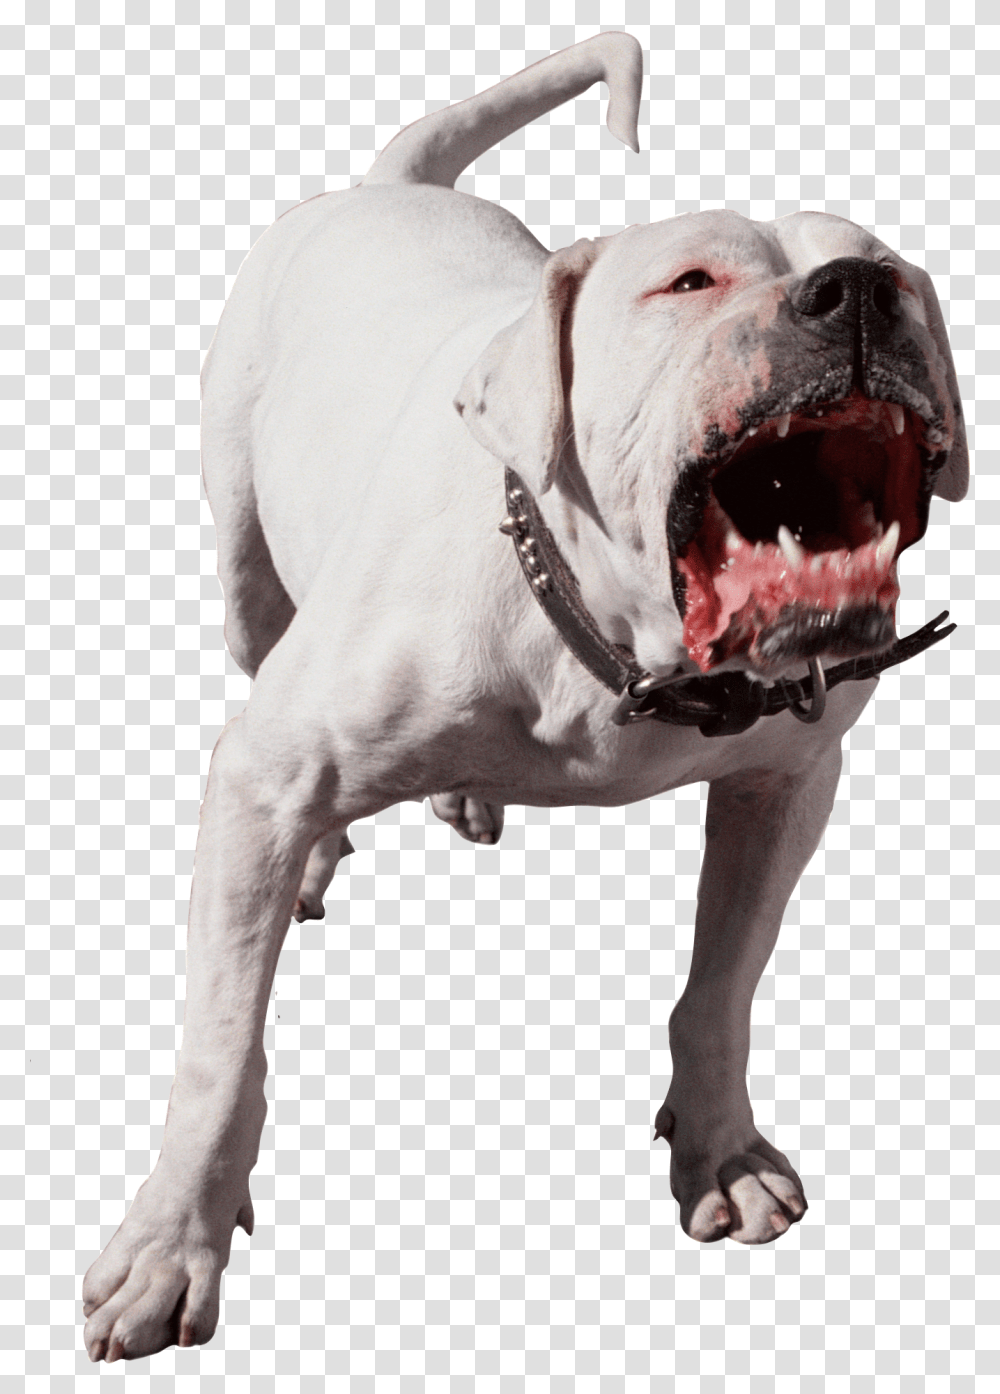 Dog, Animals, Pitbull, Bulldog, Pet Transparent Png